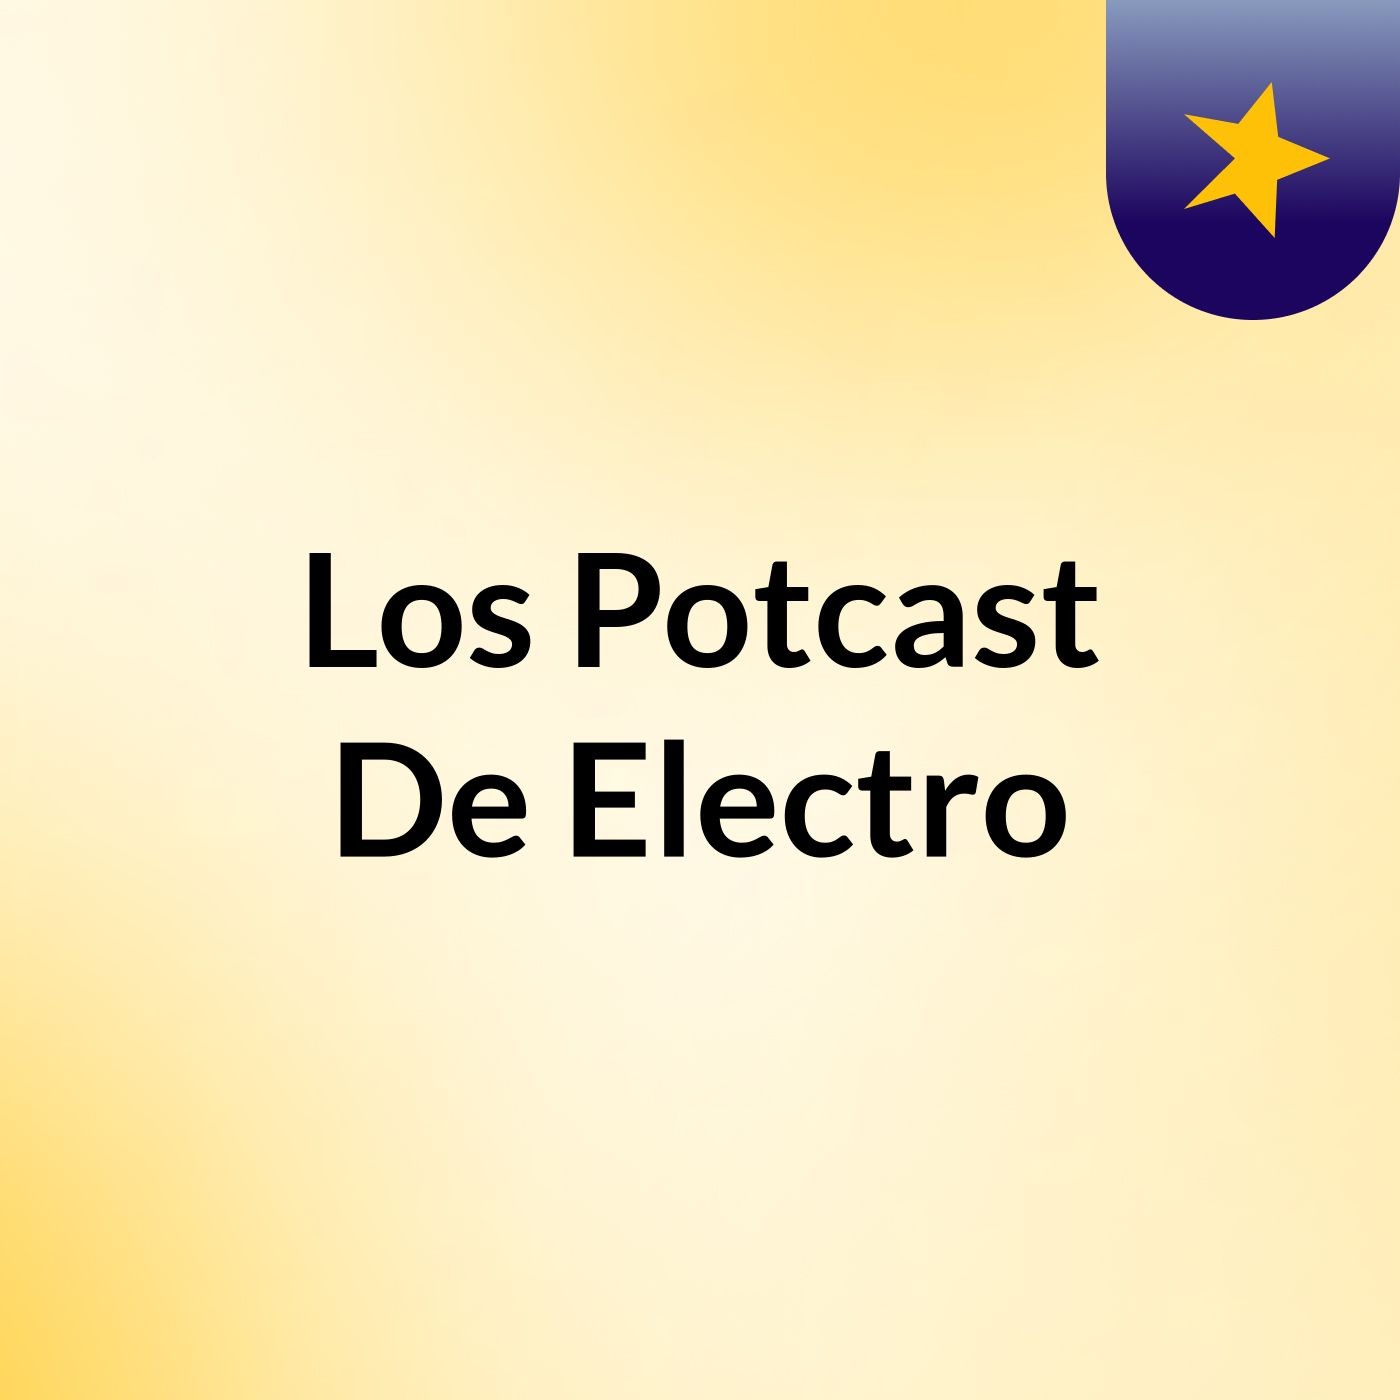 Los Potcast De Electro #1 "Prueba" ||ELECTROVIDEOS||